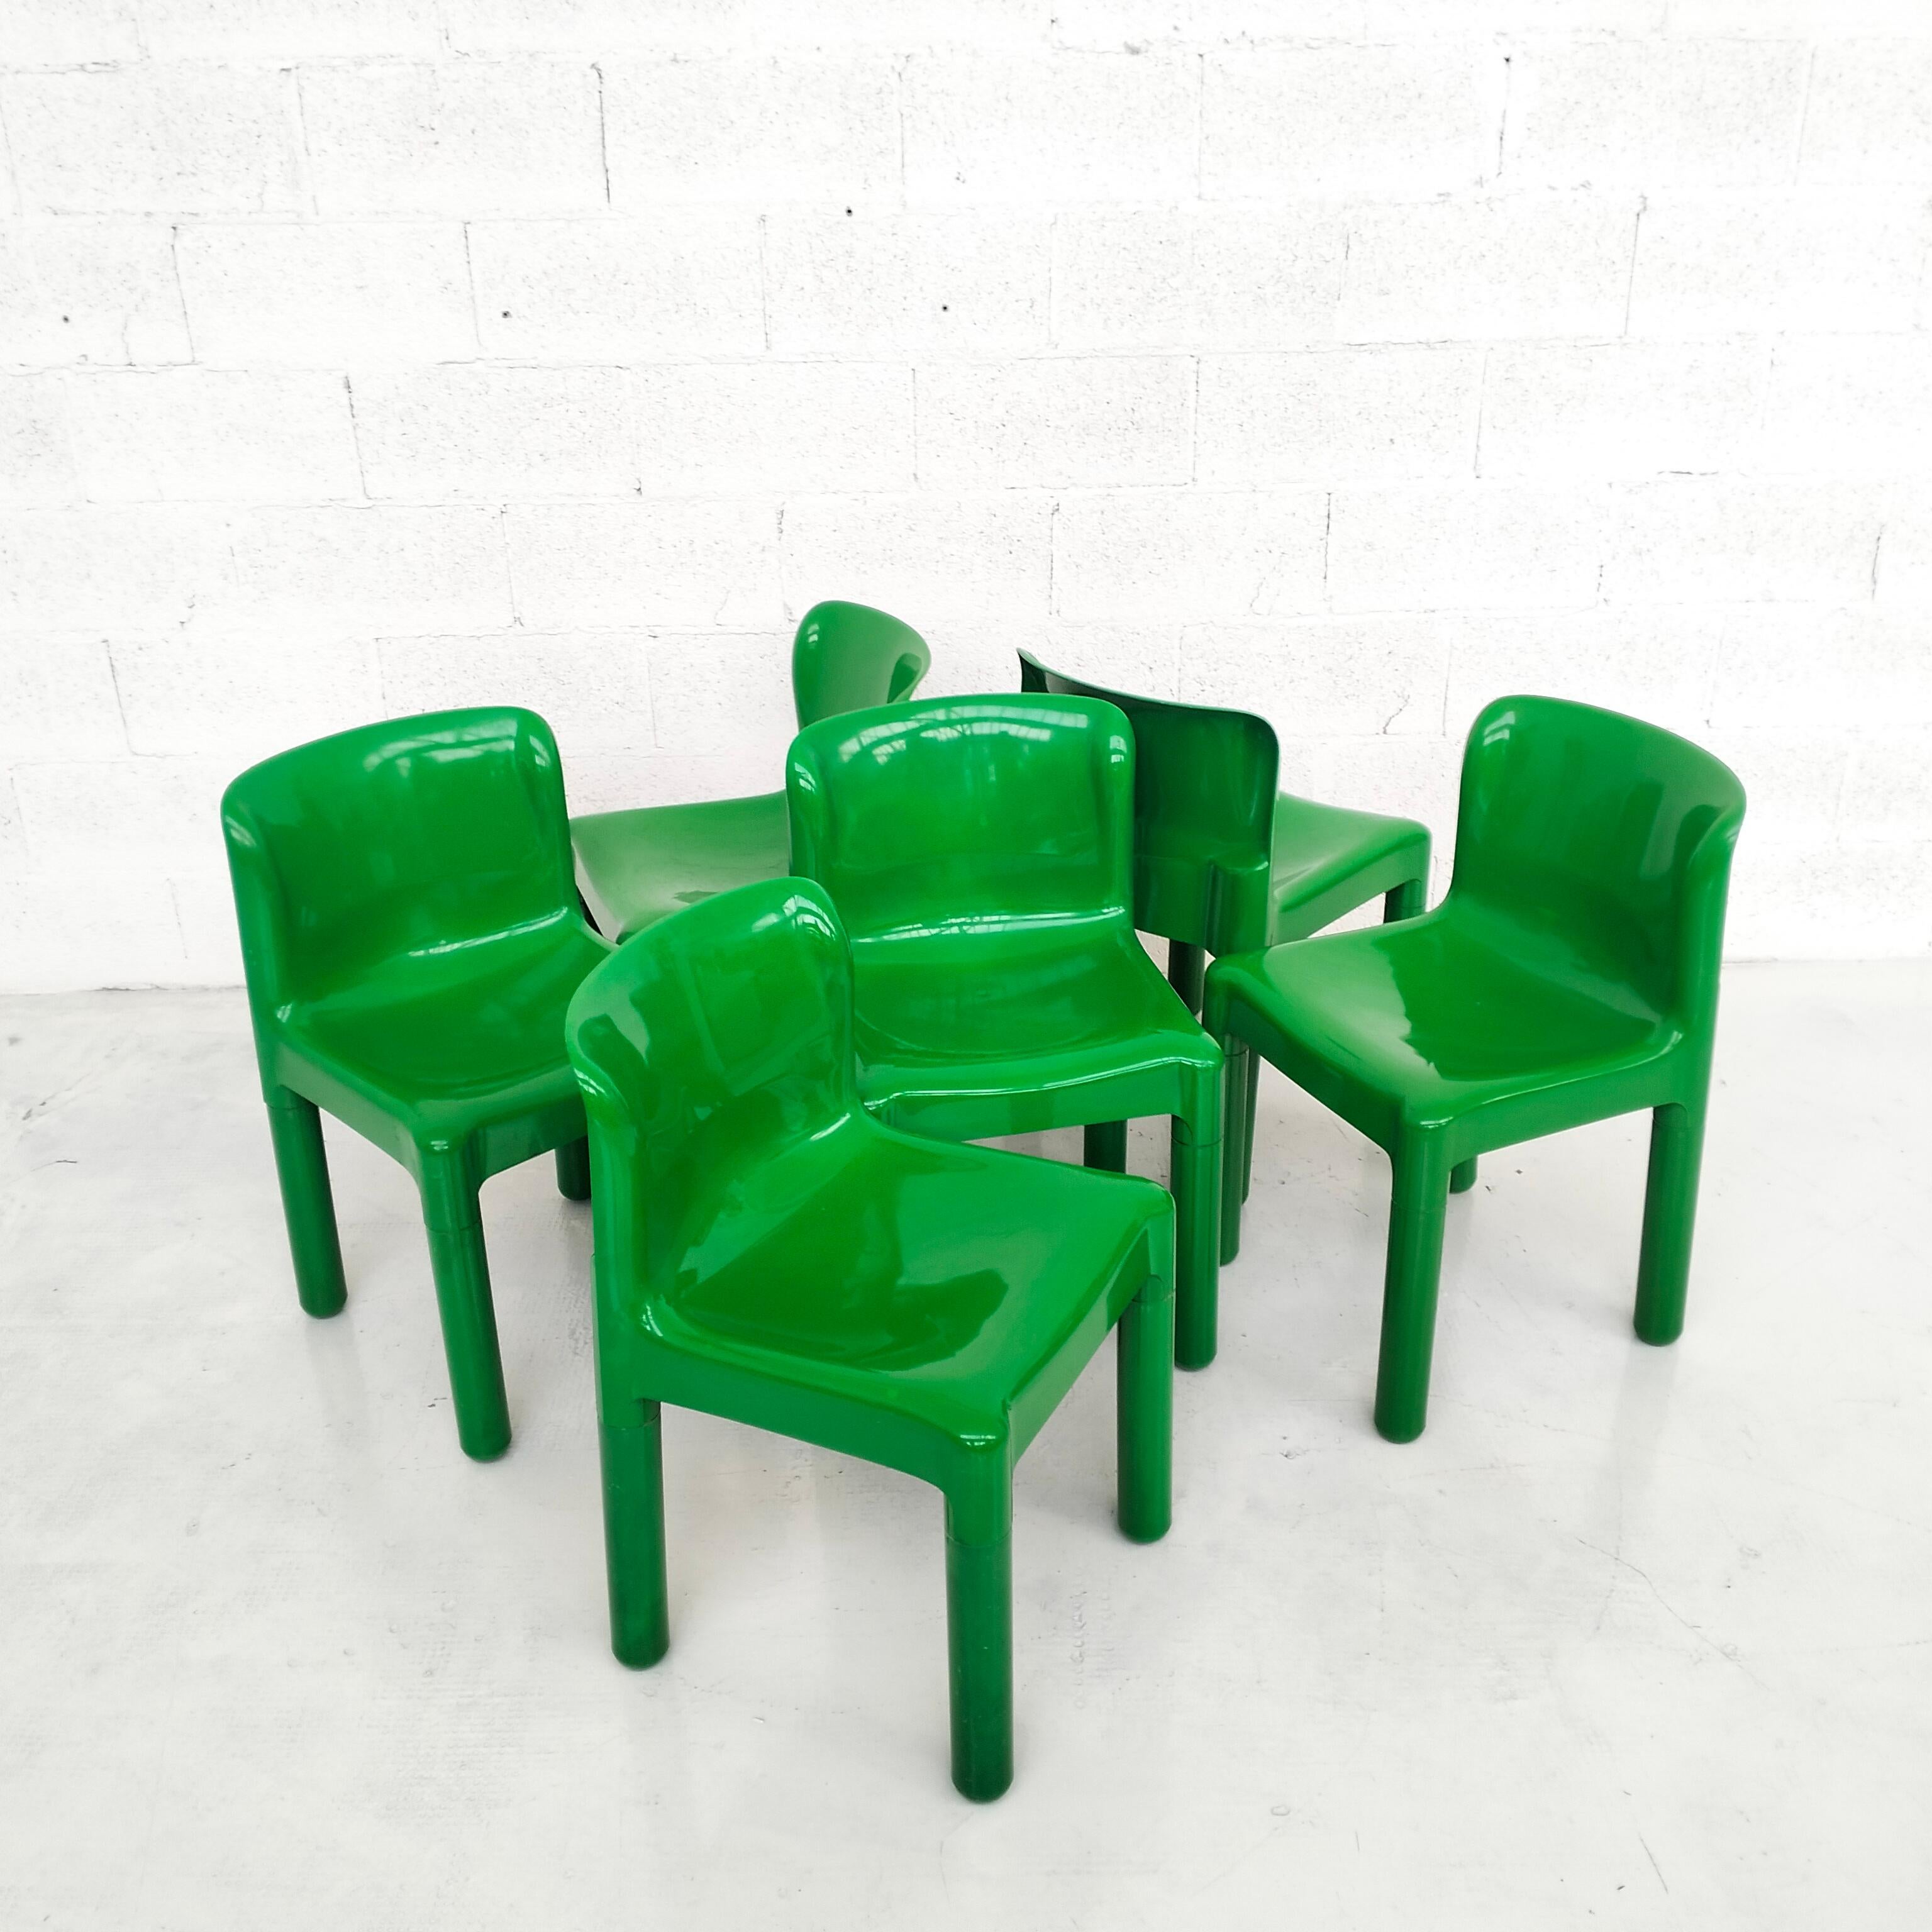 Superbe et rare ensemble de 6 chaises en plastique vert modèle 4875, dessinées par Carlo Bartoli et produites par Kartell dans les années 1970. 
En bon état, usure due à l'âge et à l'utilisation.
Dimensions : L 44 cm - P 42 - H 74/43 : L 44 cm - D